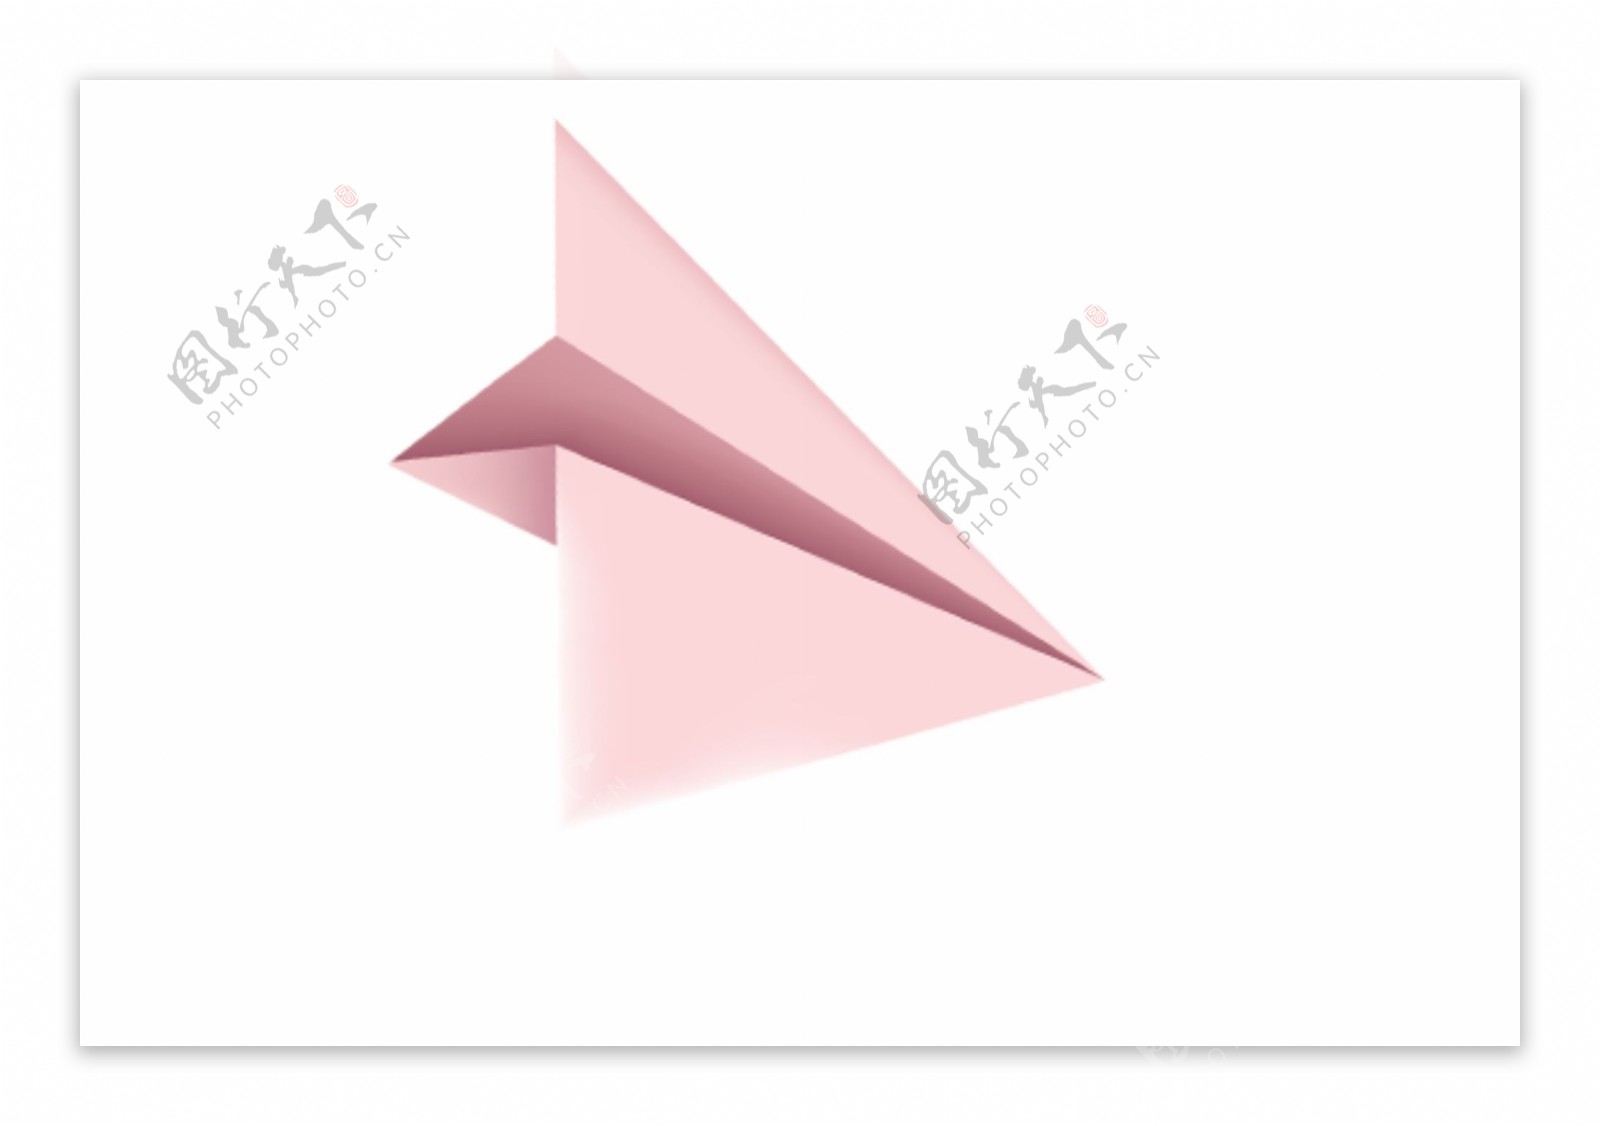 粉色纸飞机折纸